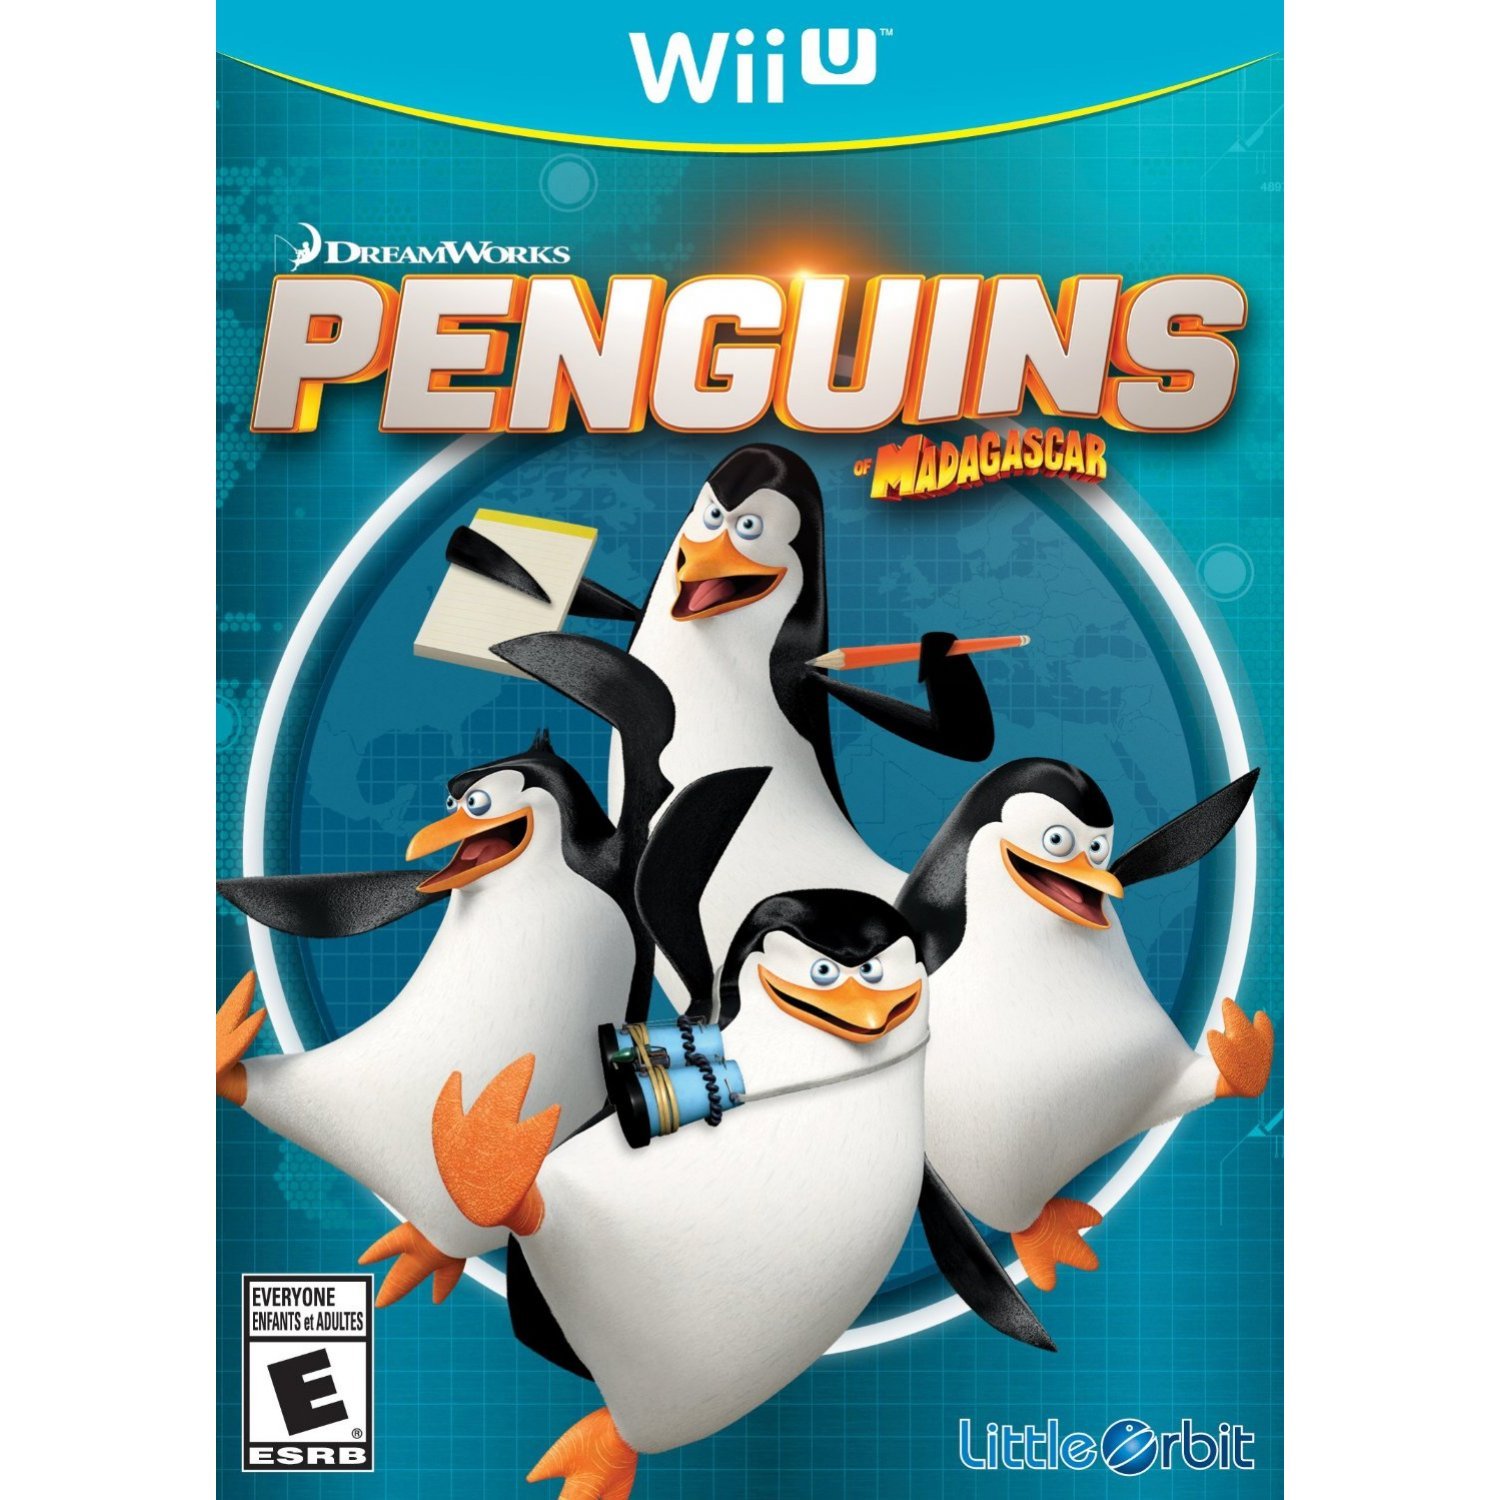 The Penguins of Madagascar - Nintendo Nintendo Wii U